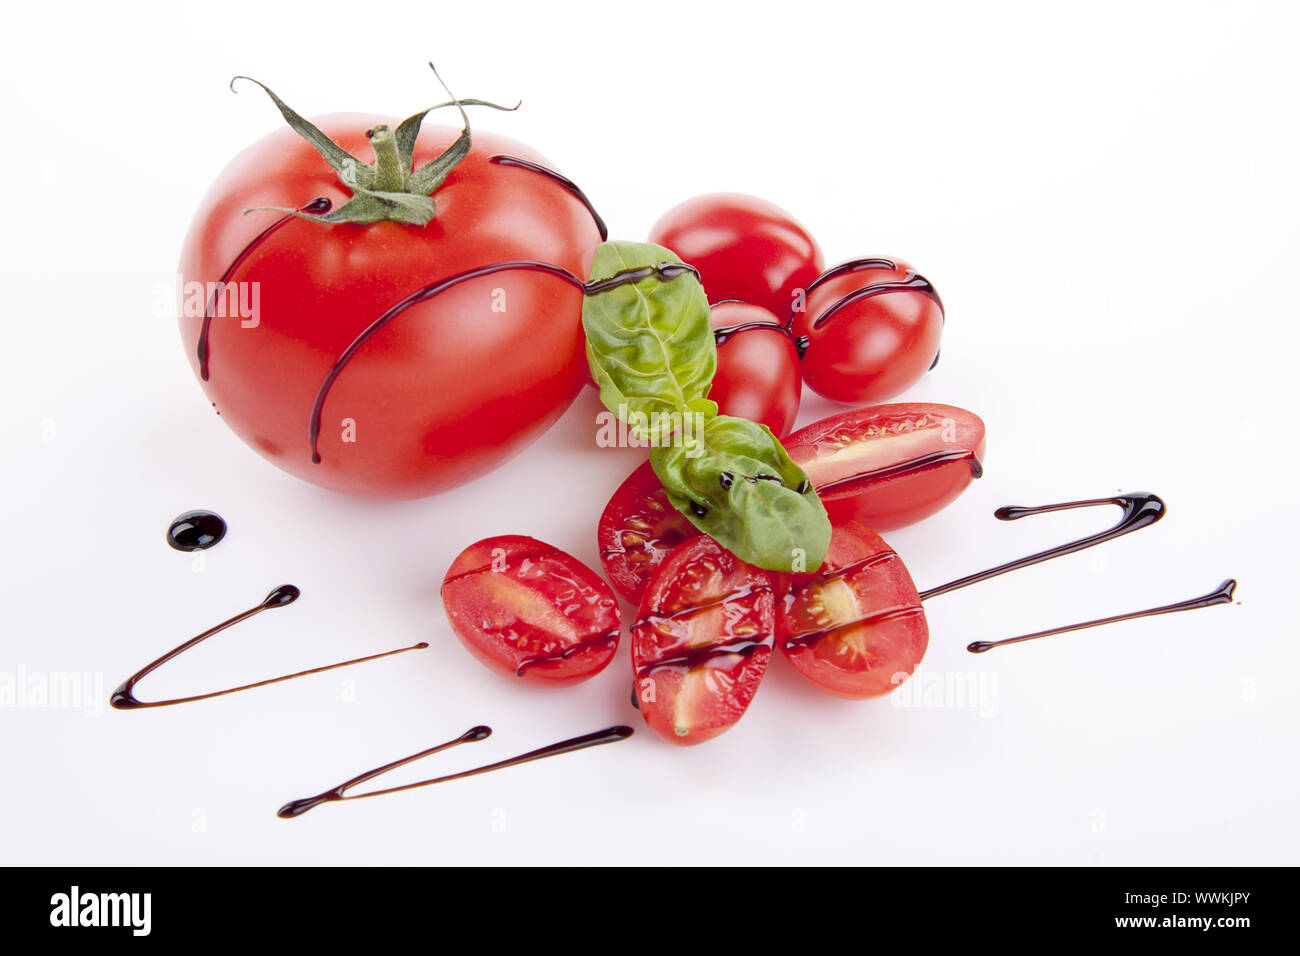 Les tomates rouges frais avec du vinaigre balsamique et huile d'olive Banque D'Images